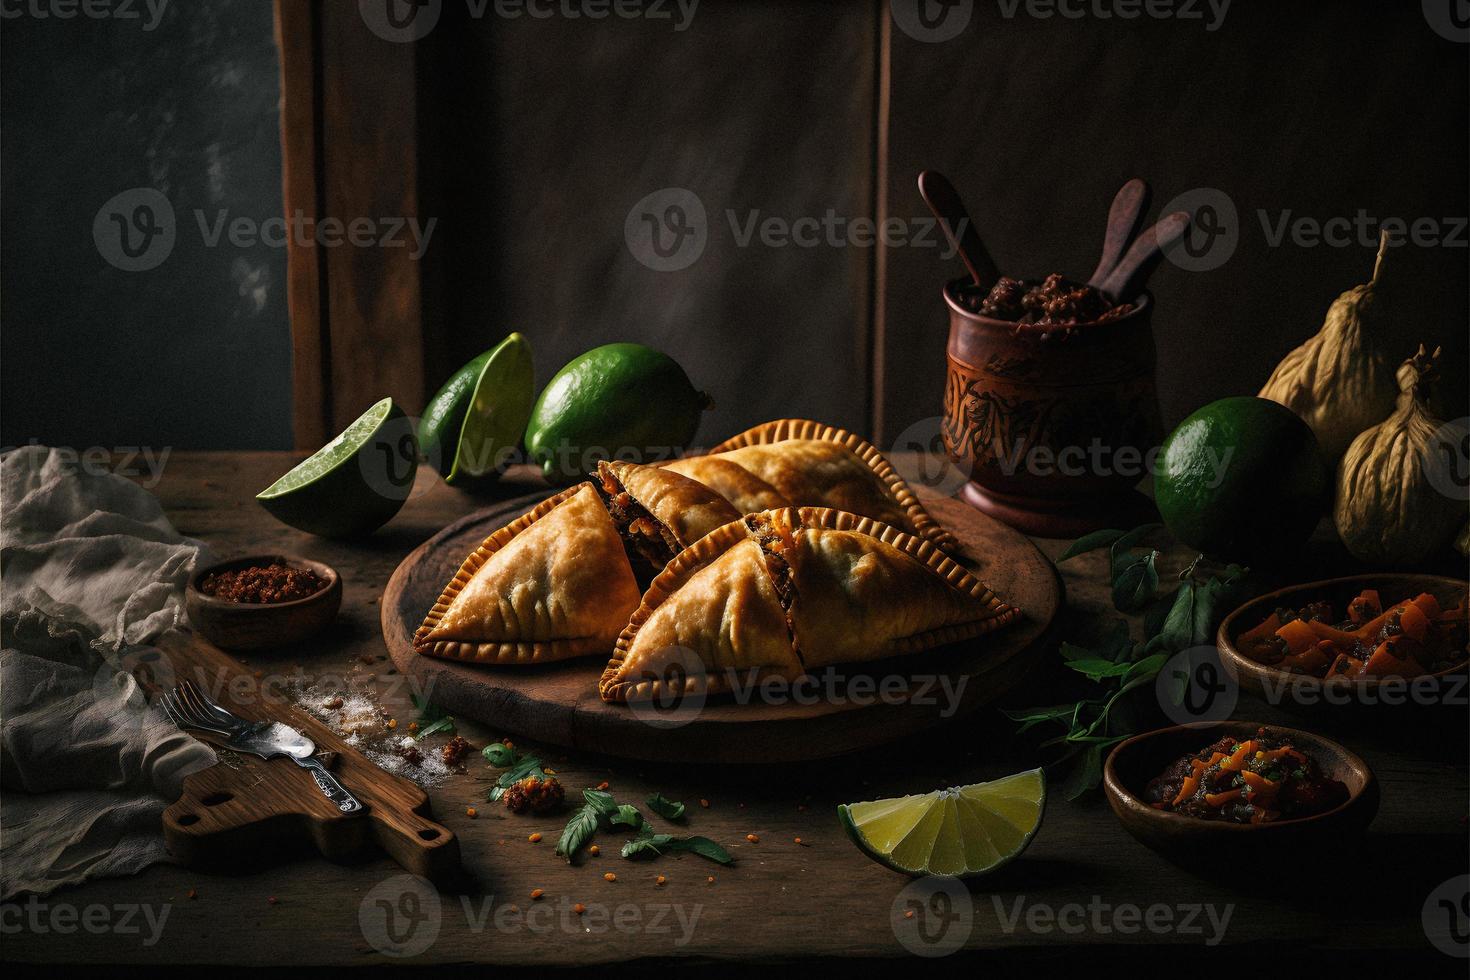 hingeben im das Reich Aromen von Latein Amerika mit unser Empanadas. lecker Bilder Vitrine traditionell, Straße Essen, und Gourmet Stile von diese Geliebte Gericht foto